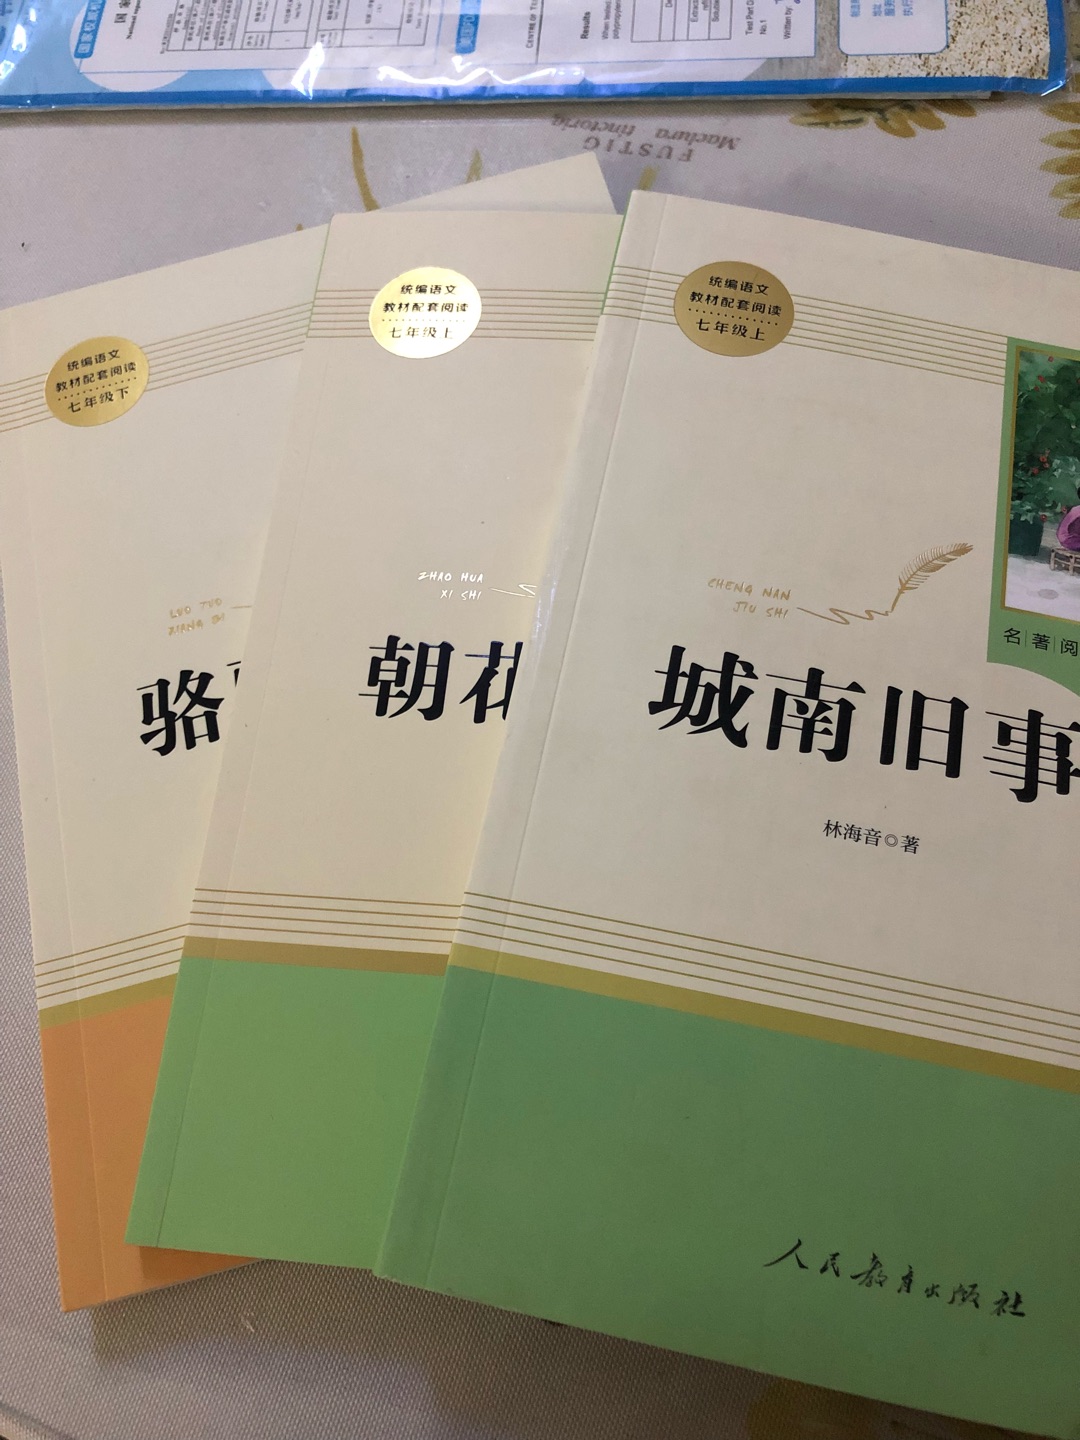 初中语文名著阅读还是人教版的好！装订精美，内容全面，有阅读规划，走近作者，资料链接，还有精美插图，特别适合中学生阅读！值得推荐！！